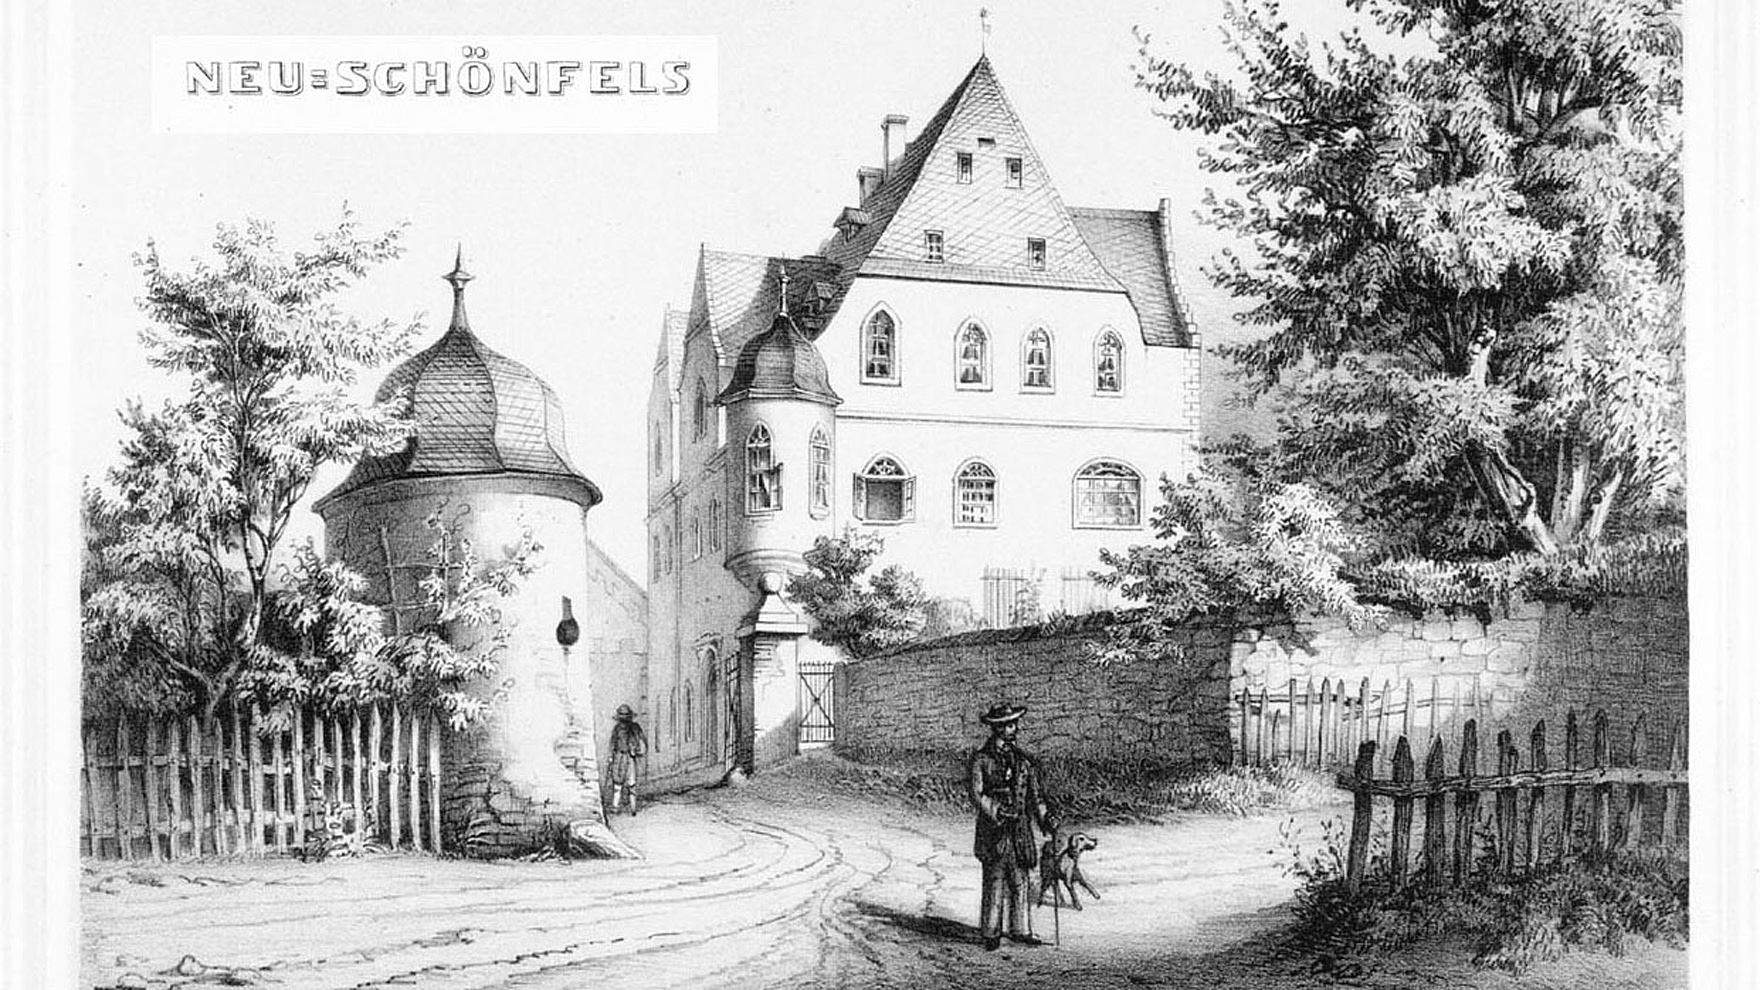 Ansicht von Neuschönfels, Mitte 19. Jh., aus: G. A. Poenicke, Album der Rittergüter und Schlösser des Königreichs Sachsen, Leipzig 1860, © gemeinfrei